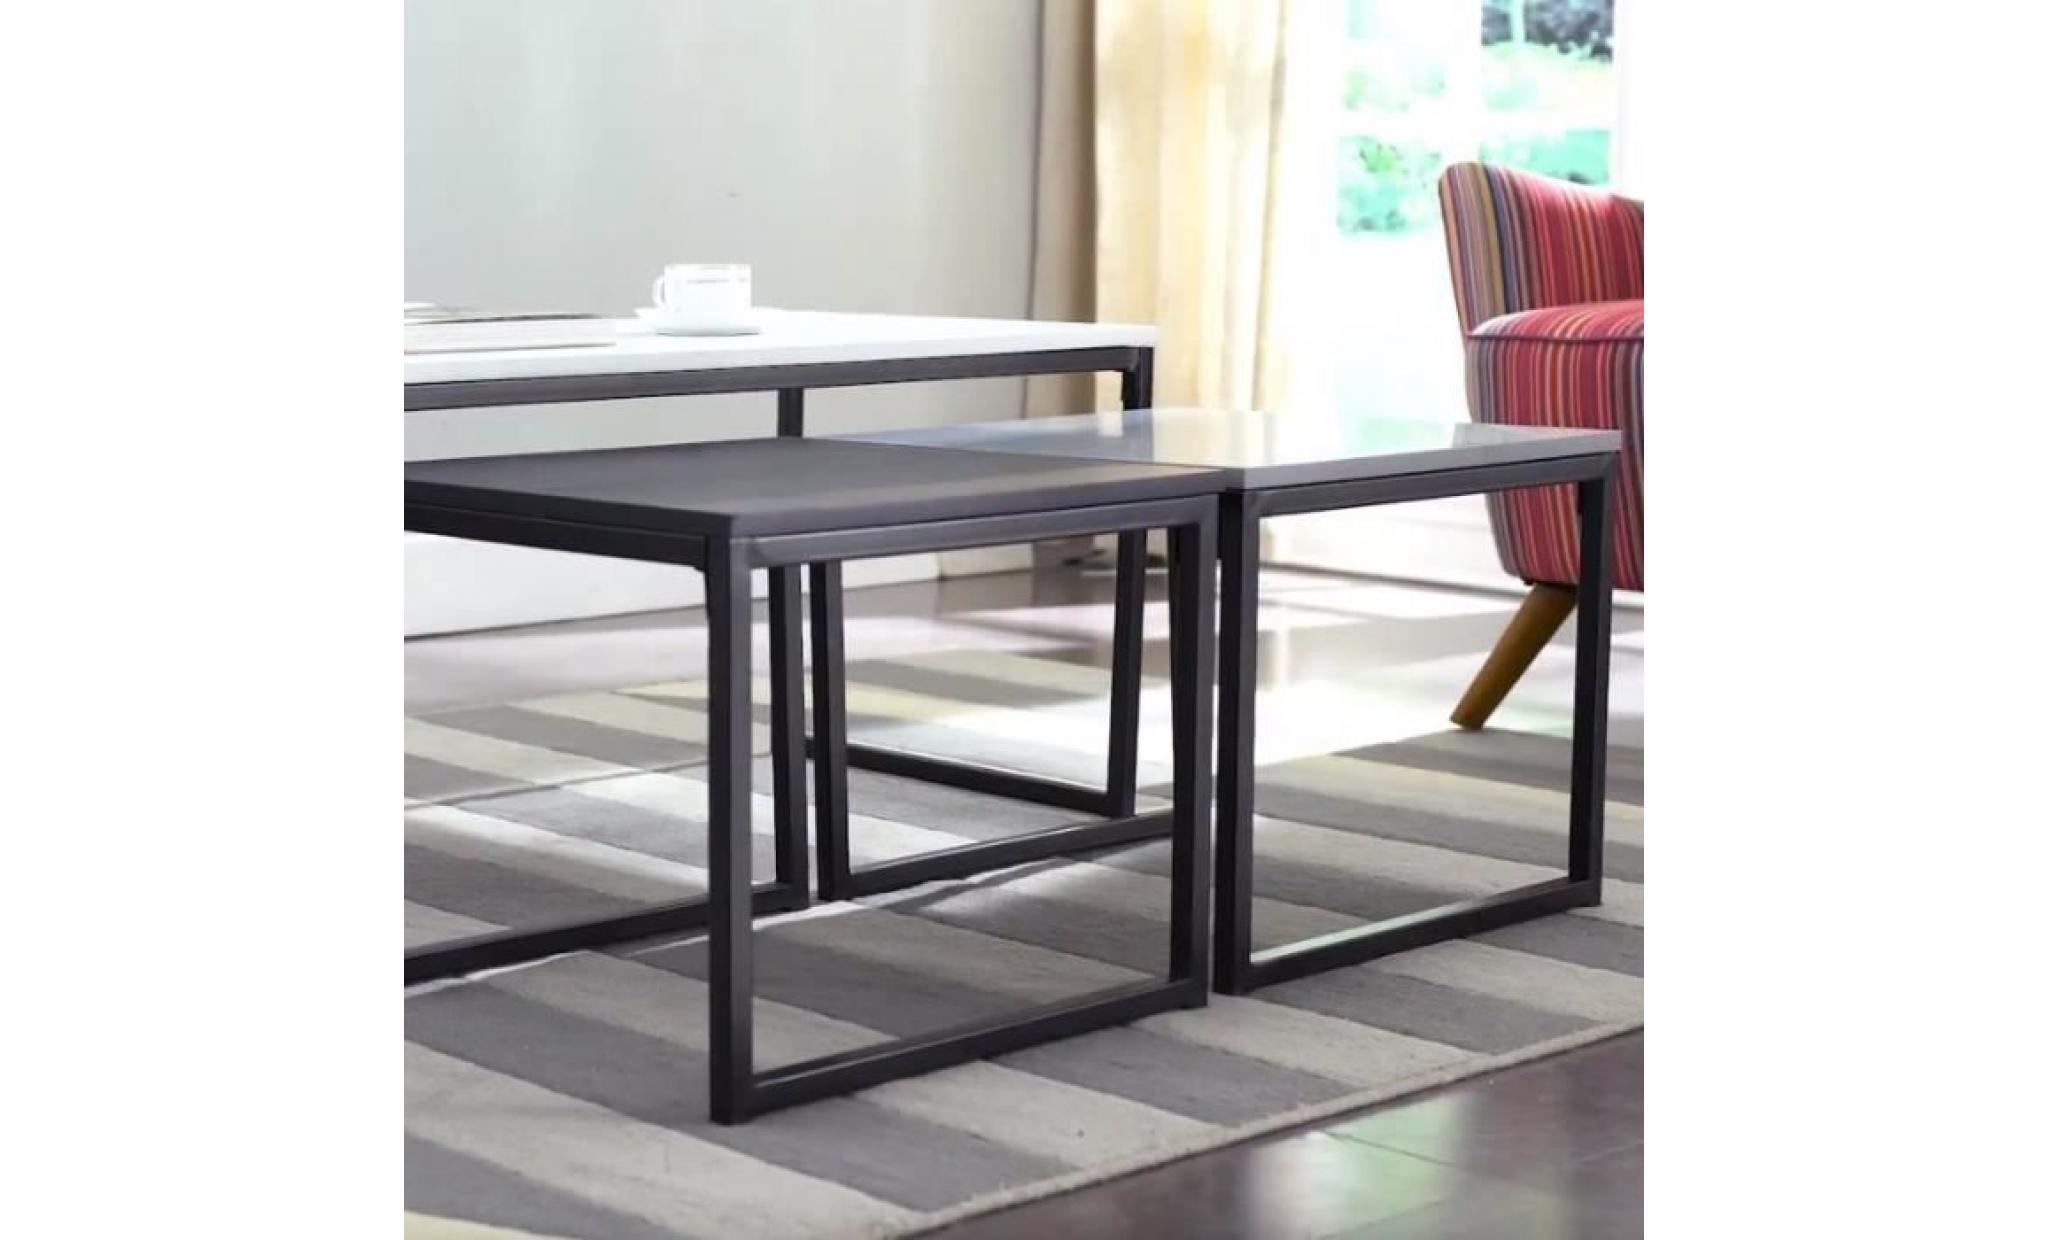 ensemble de tables basses   monochrome   3 tables   couleurs : blanche, noire, grise   style industriel   style scandi pas cher